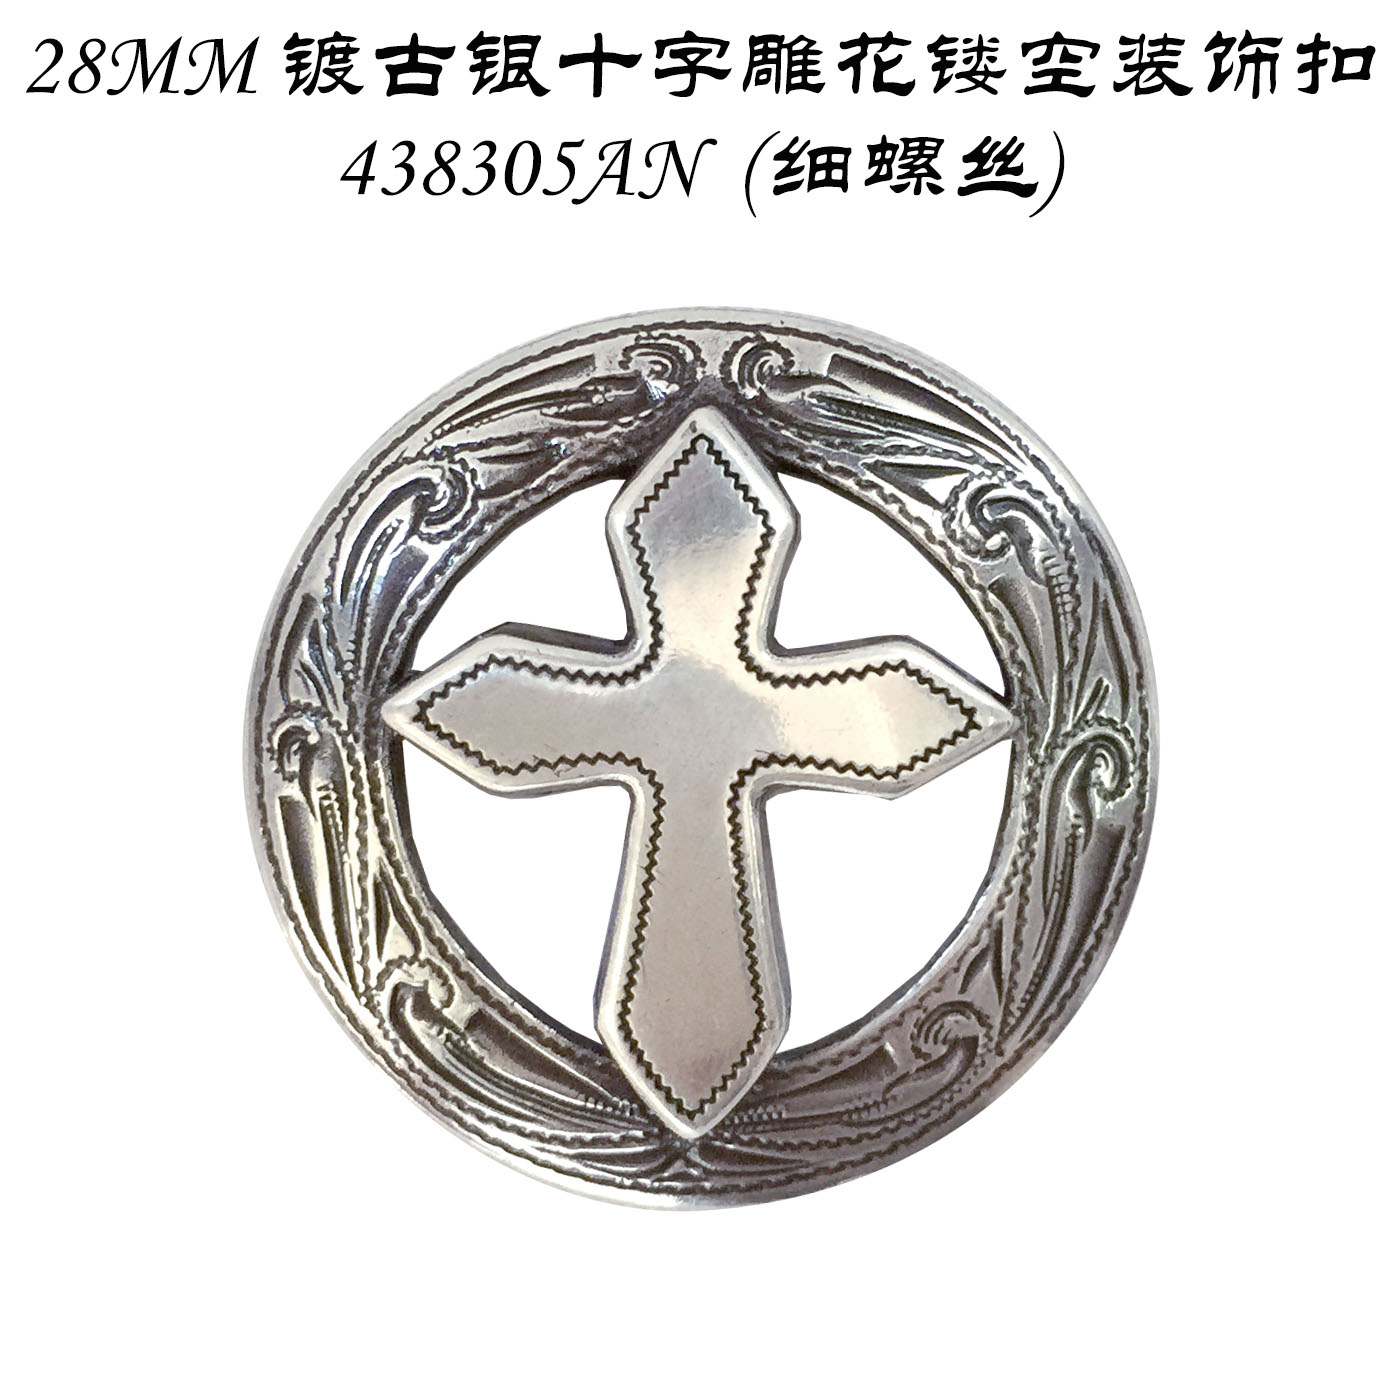 28MM镀古银十字雕花镂空装饰扣-438305AN(细螺丝)